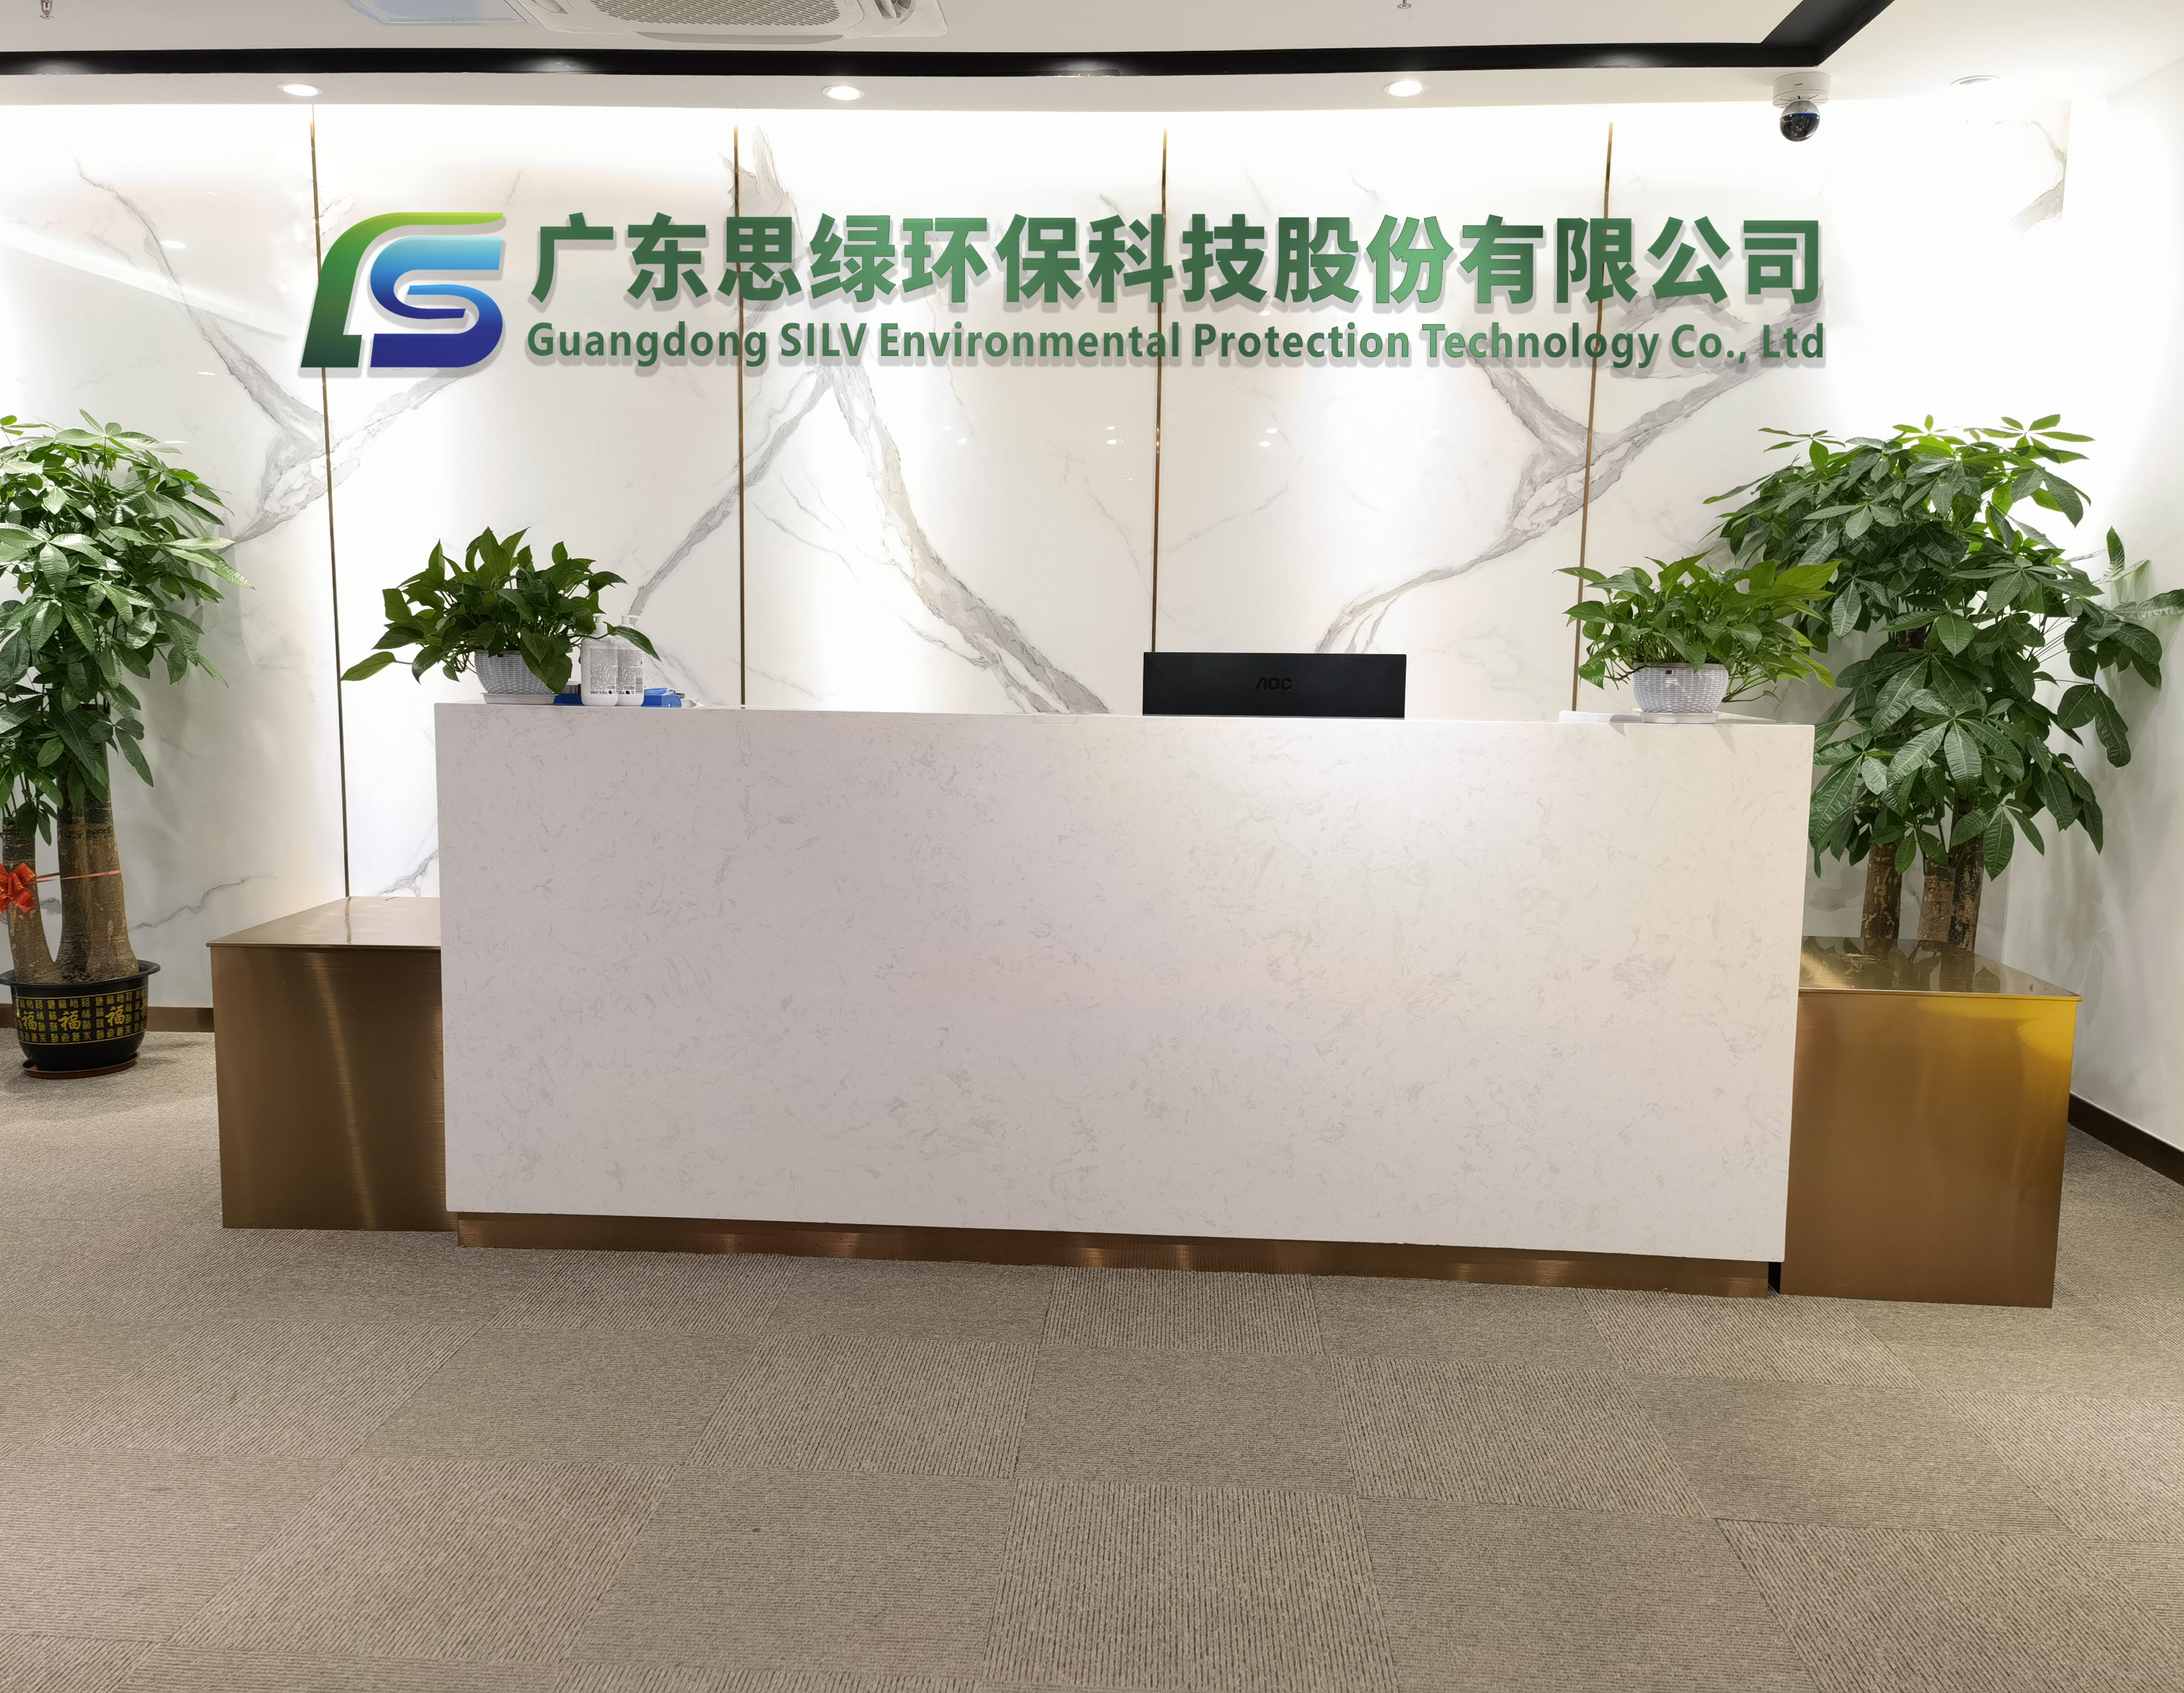 广东思绿环保科技股份有限公司